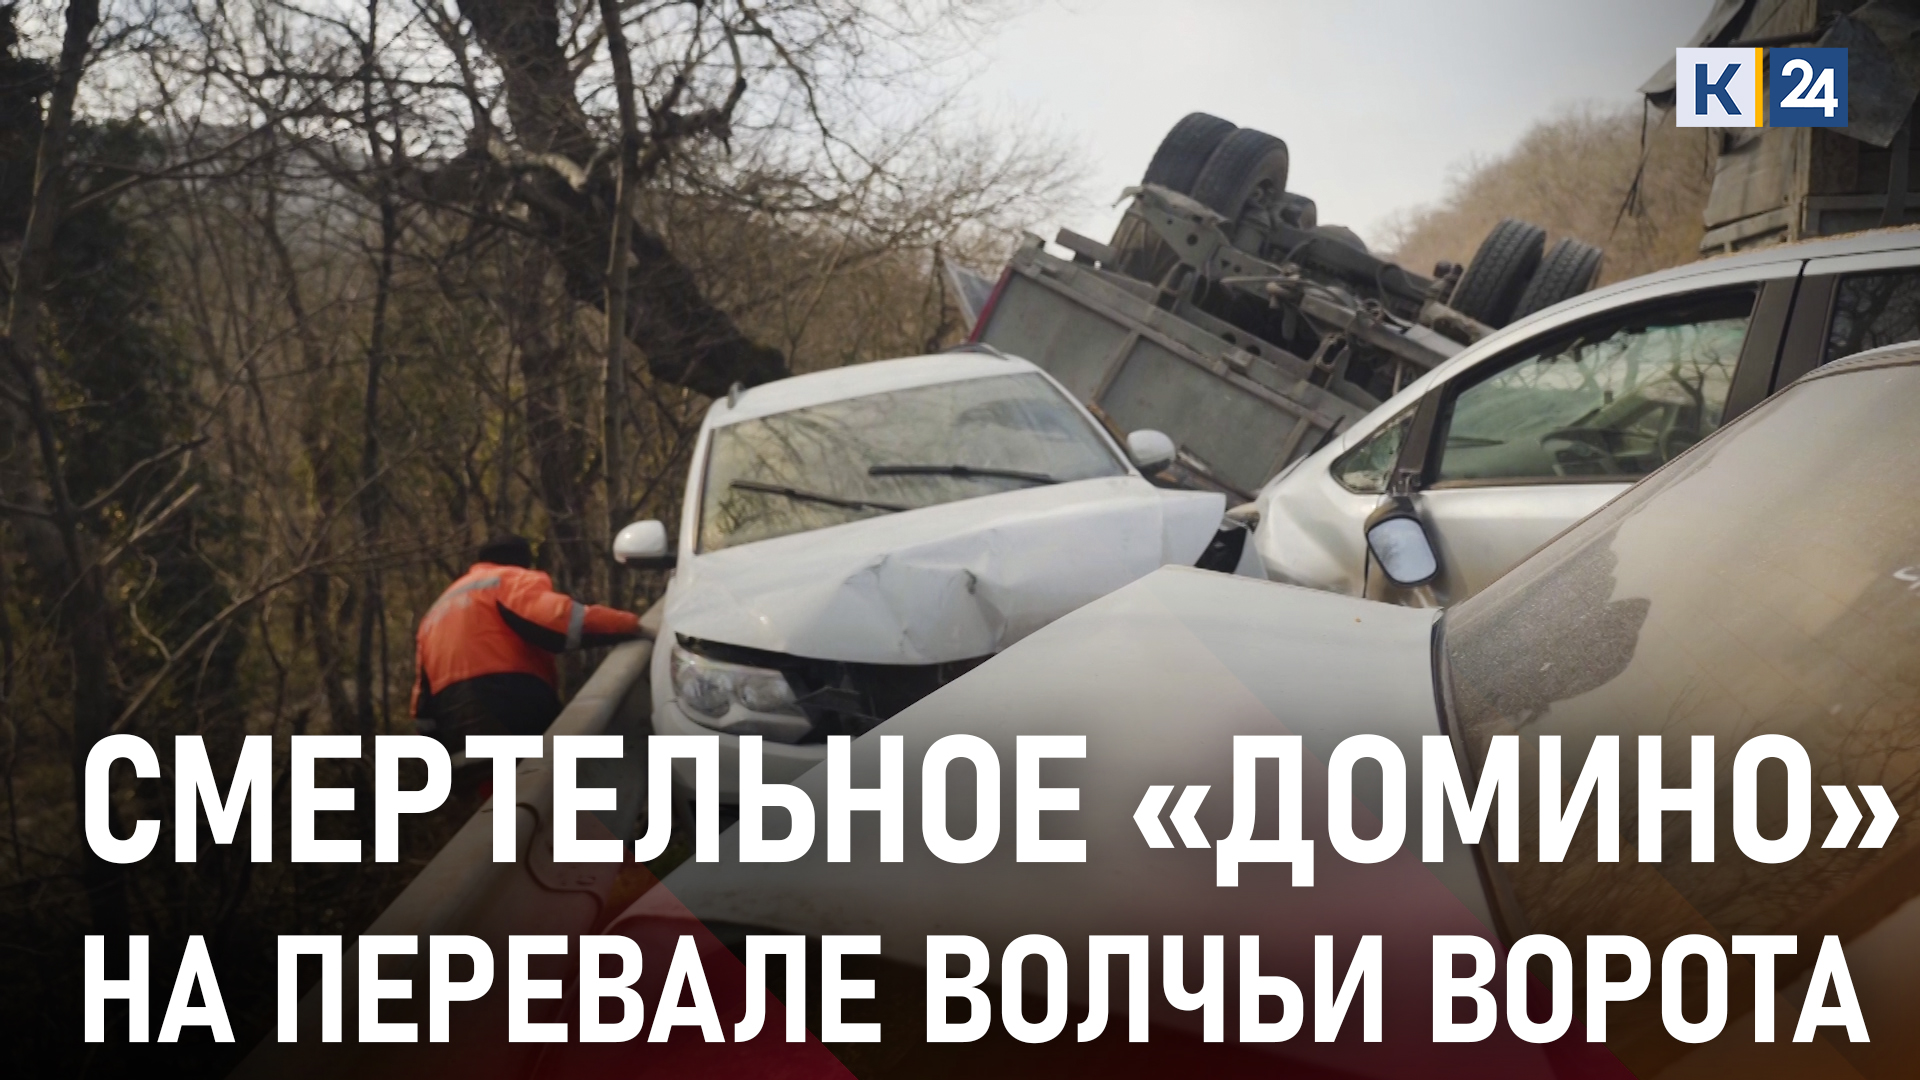 Грузовик с зерном протаранил 10 автомобилей на перевале Волчьи ворота под Новороссийском